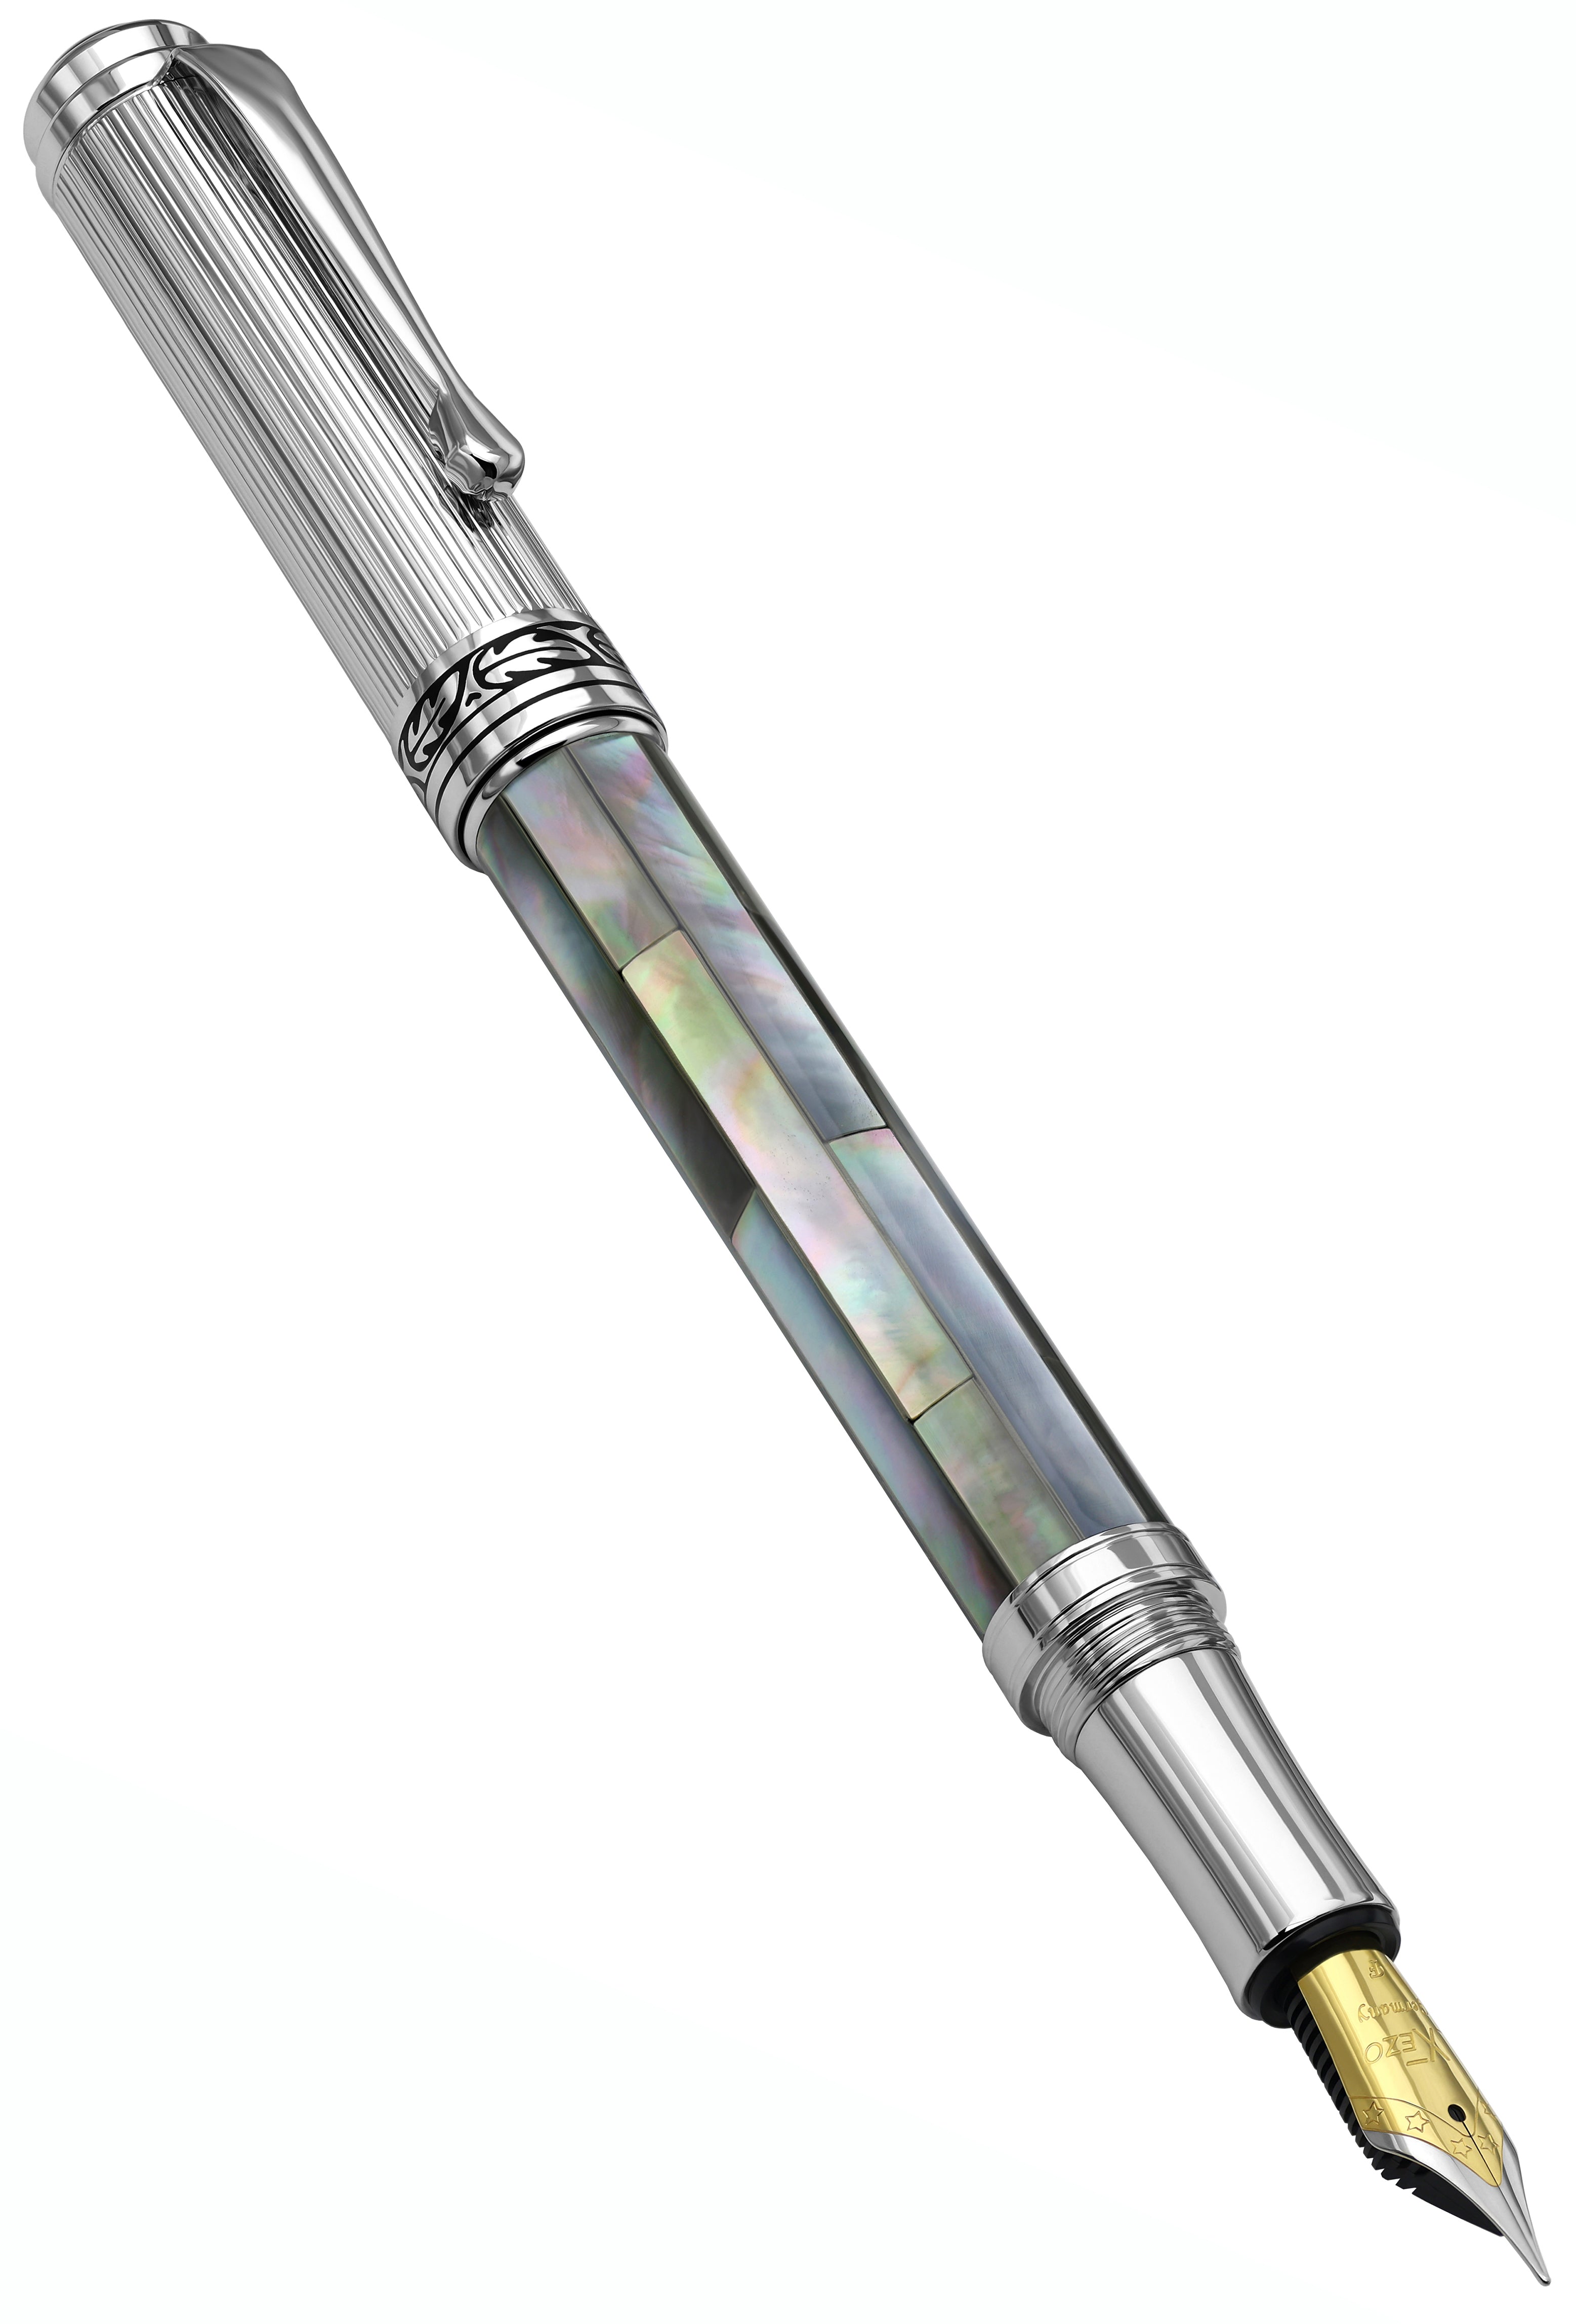 Xezo Maestro Black MOP Chrome F Maestro® Black Mother of Pearl Fountain  Pen (Fine Nib) Chrome Plated